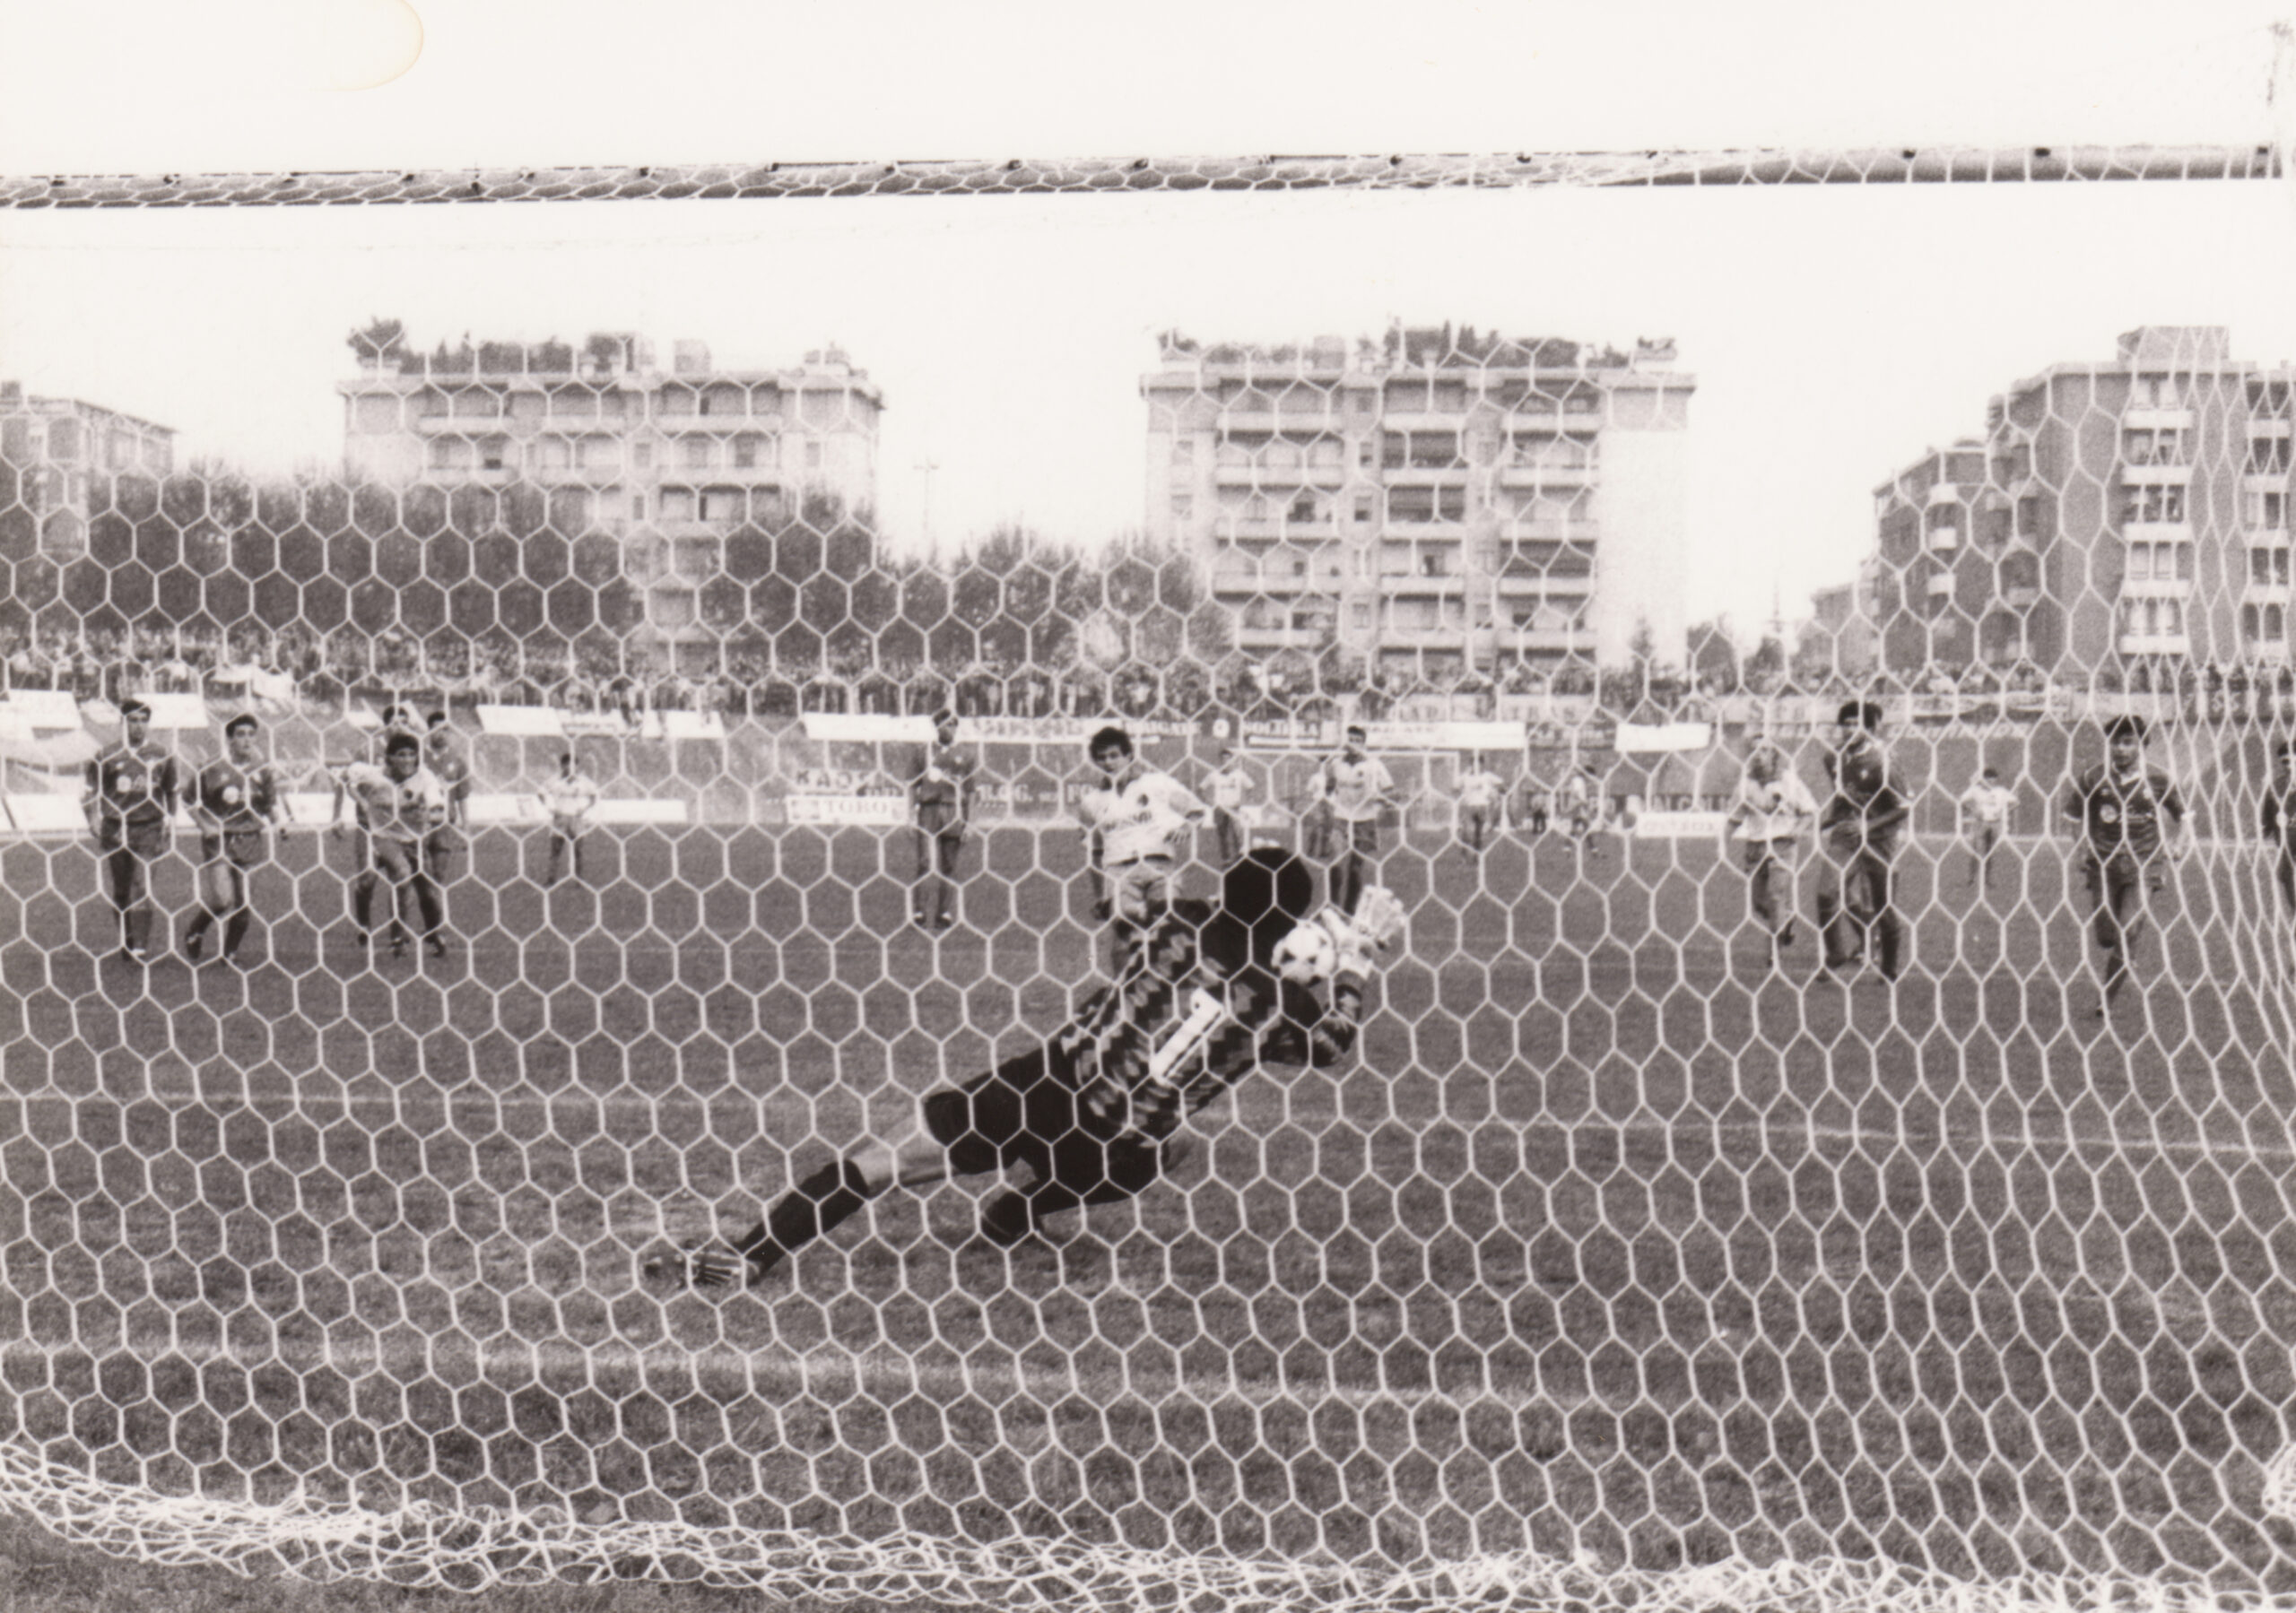 Carpi-Modena 1-1 (0-0), Carpi, Stadio Sandro Cabassi, 15 ottobre 1989.  Gasparini fallisce il rigore della possibile vittoria gialloblu. 